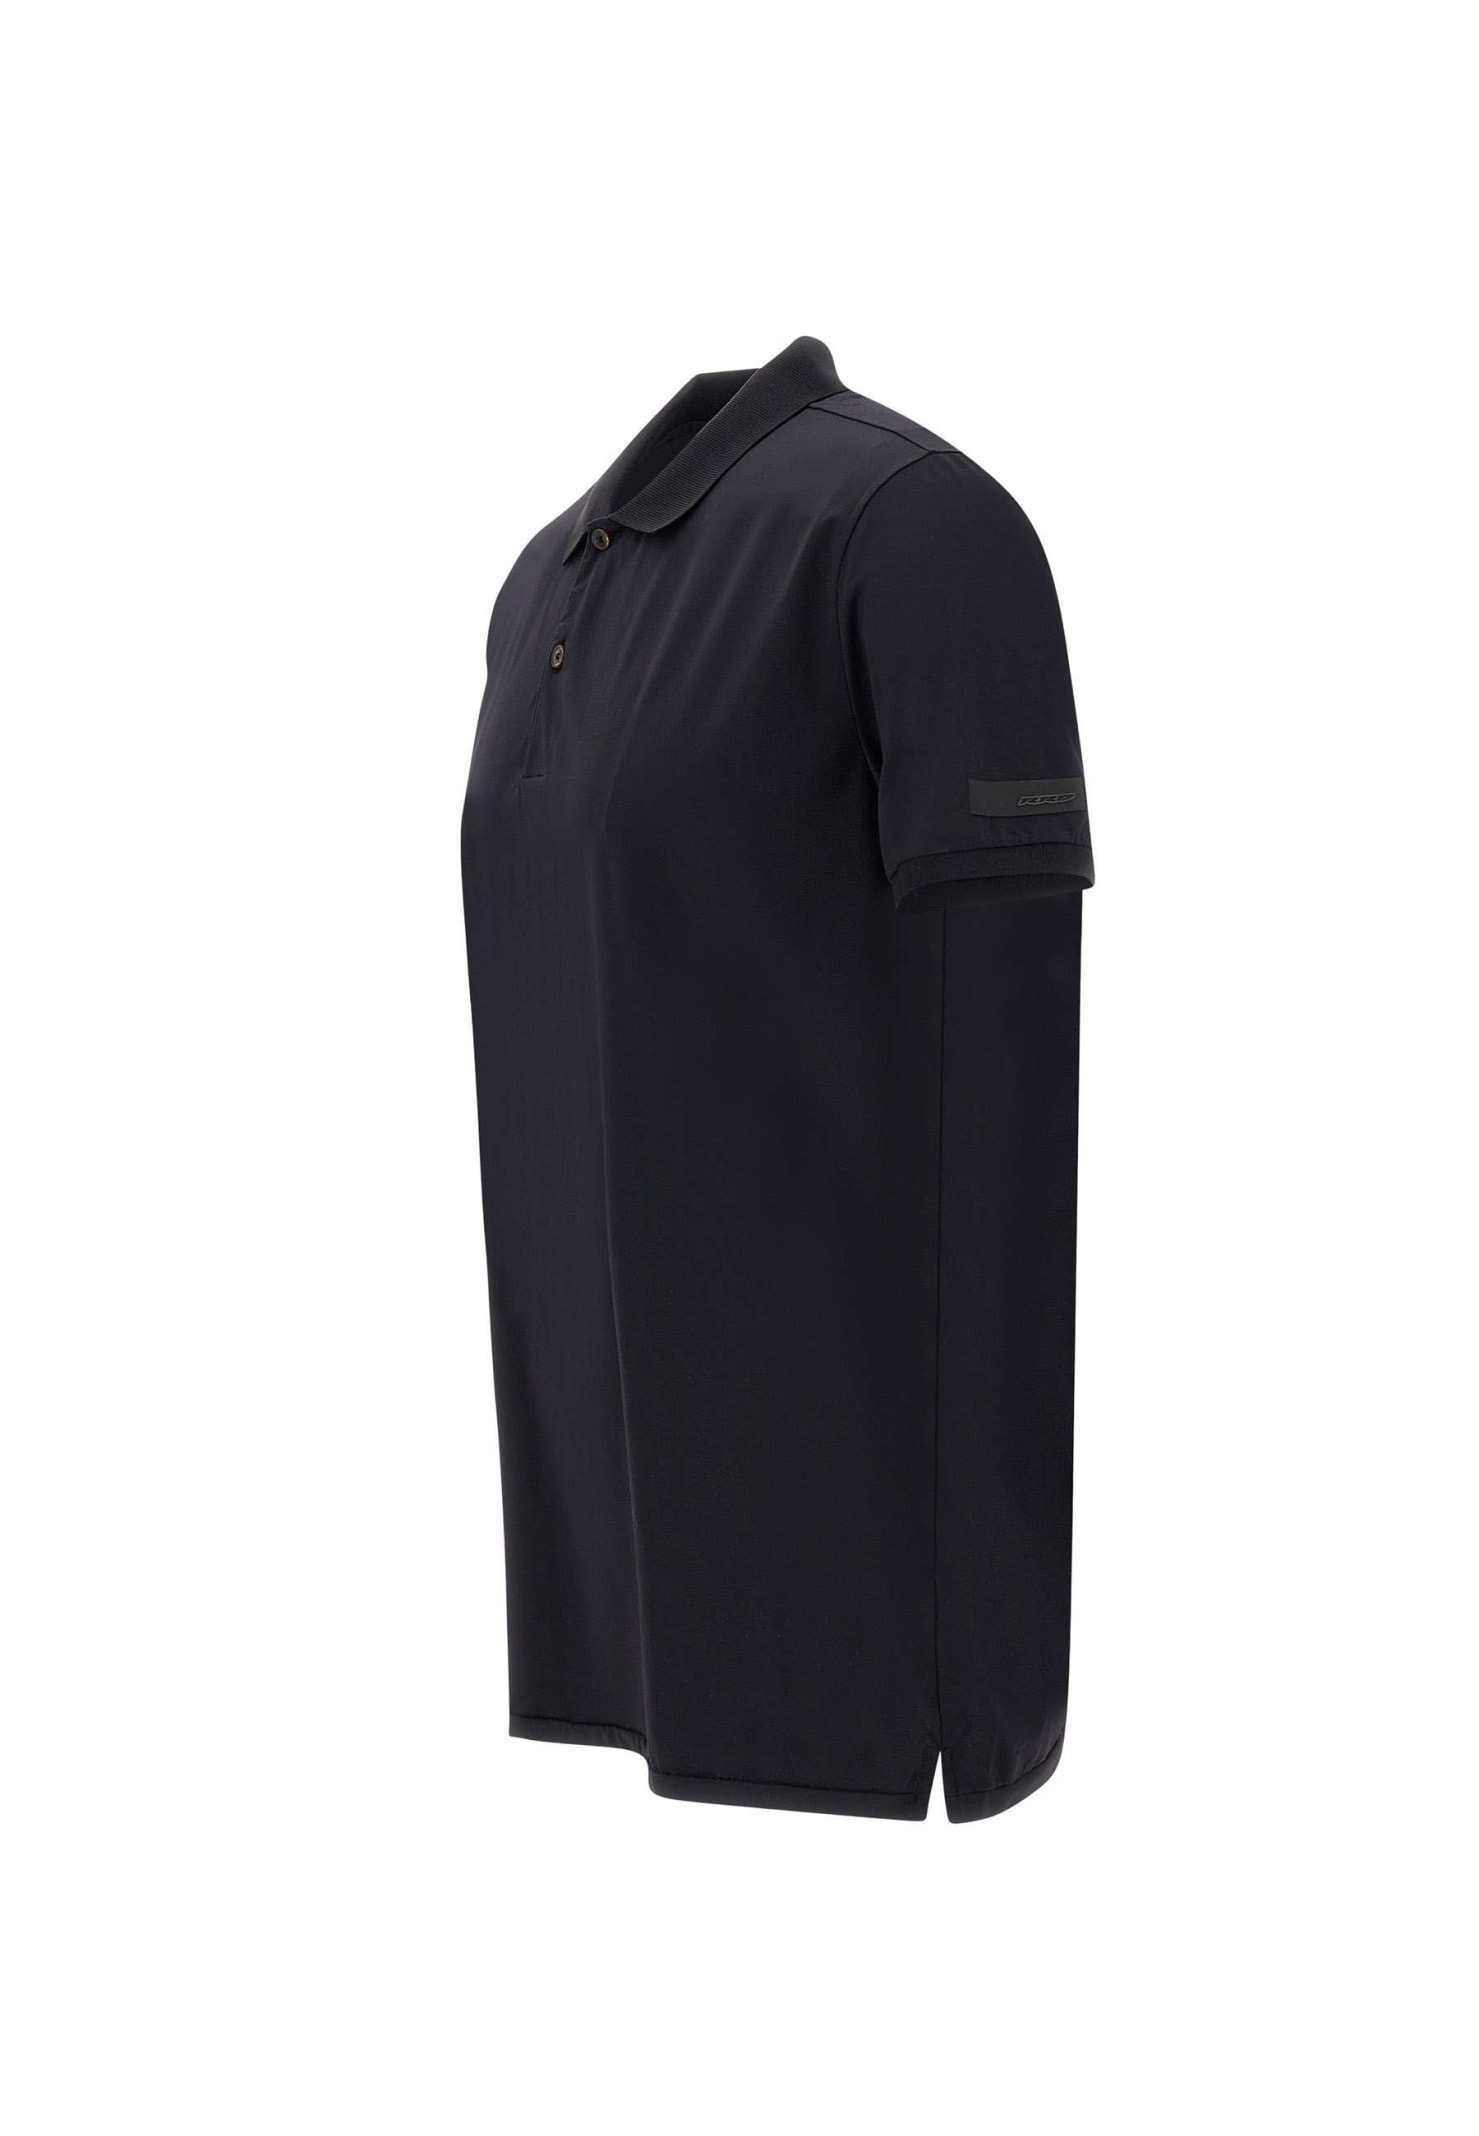 Shop Rrd - Roberto Ricci Design Gdy Oxford Polo Shirt Polo Shirt In Nero